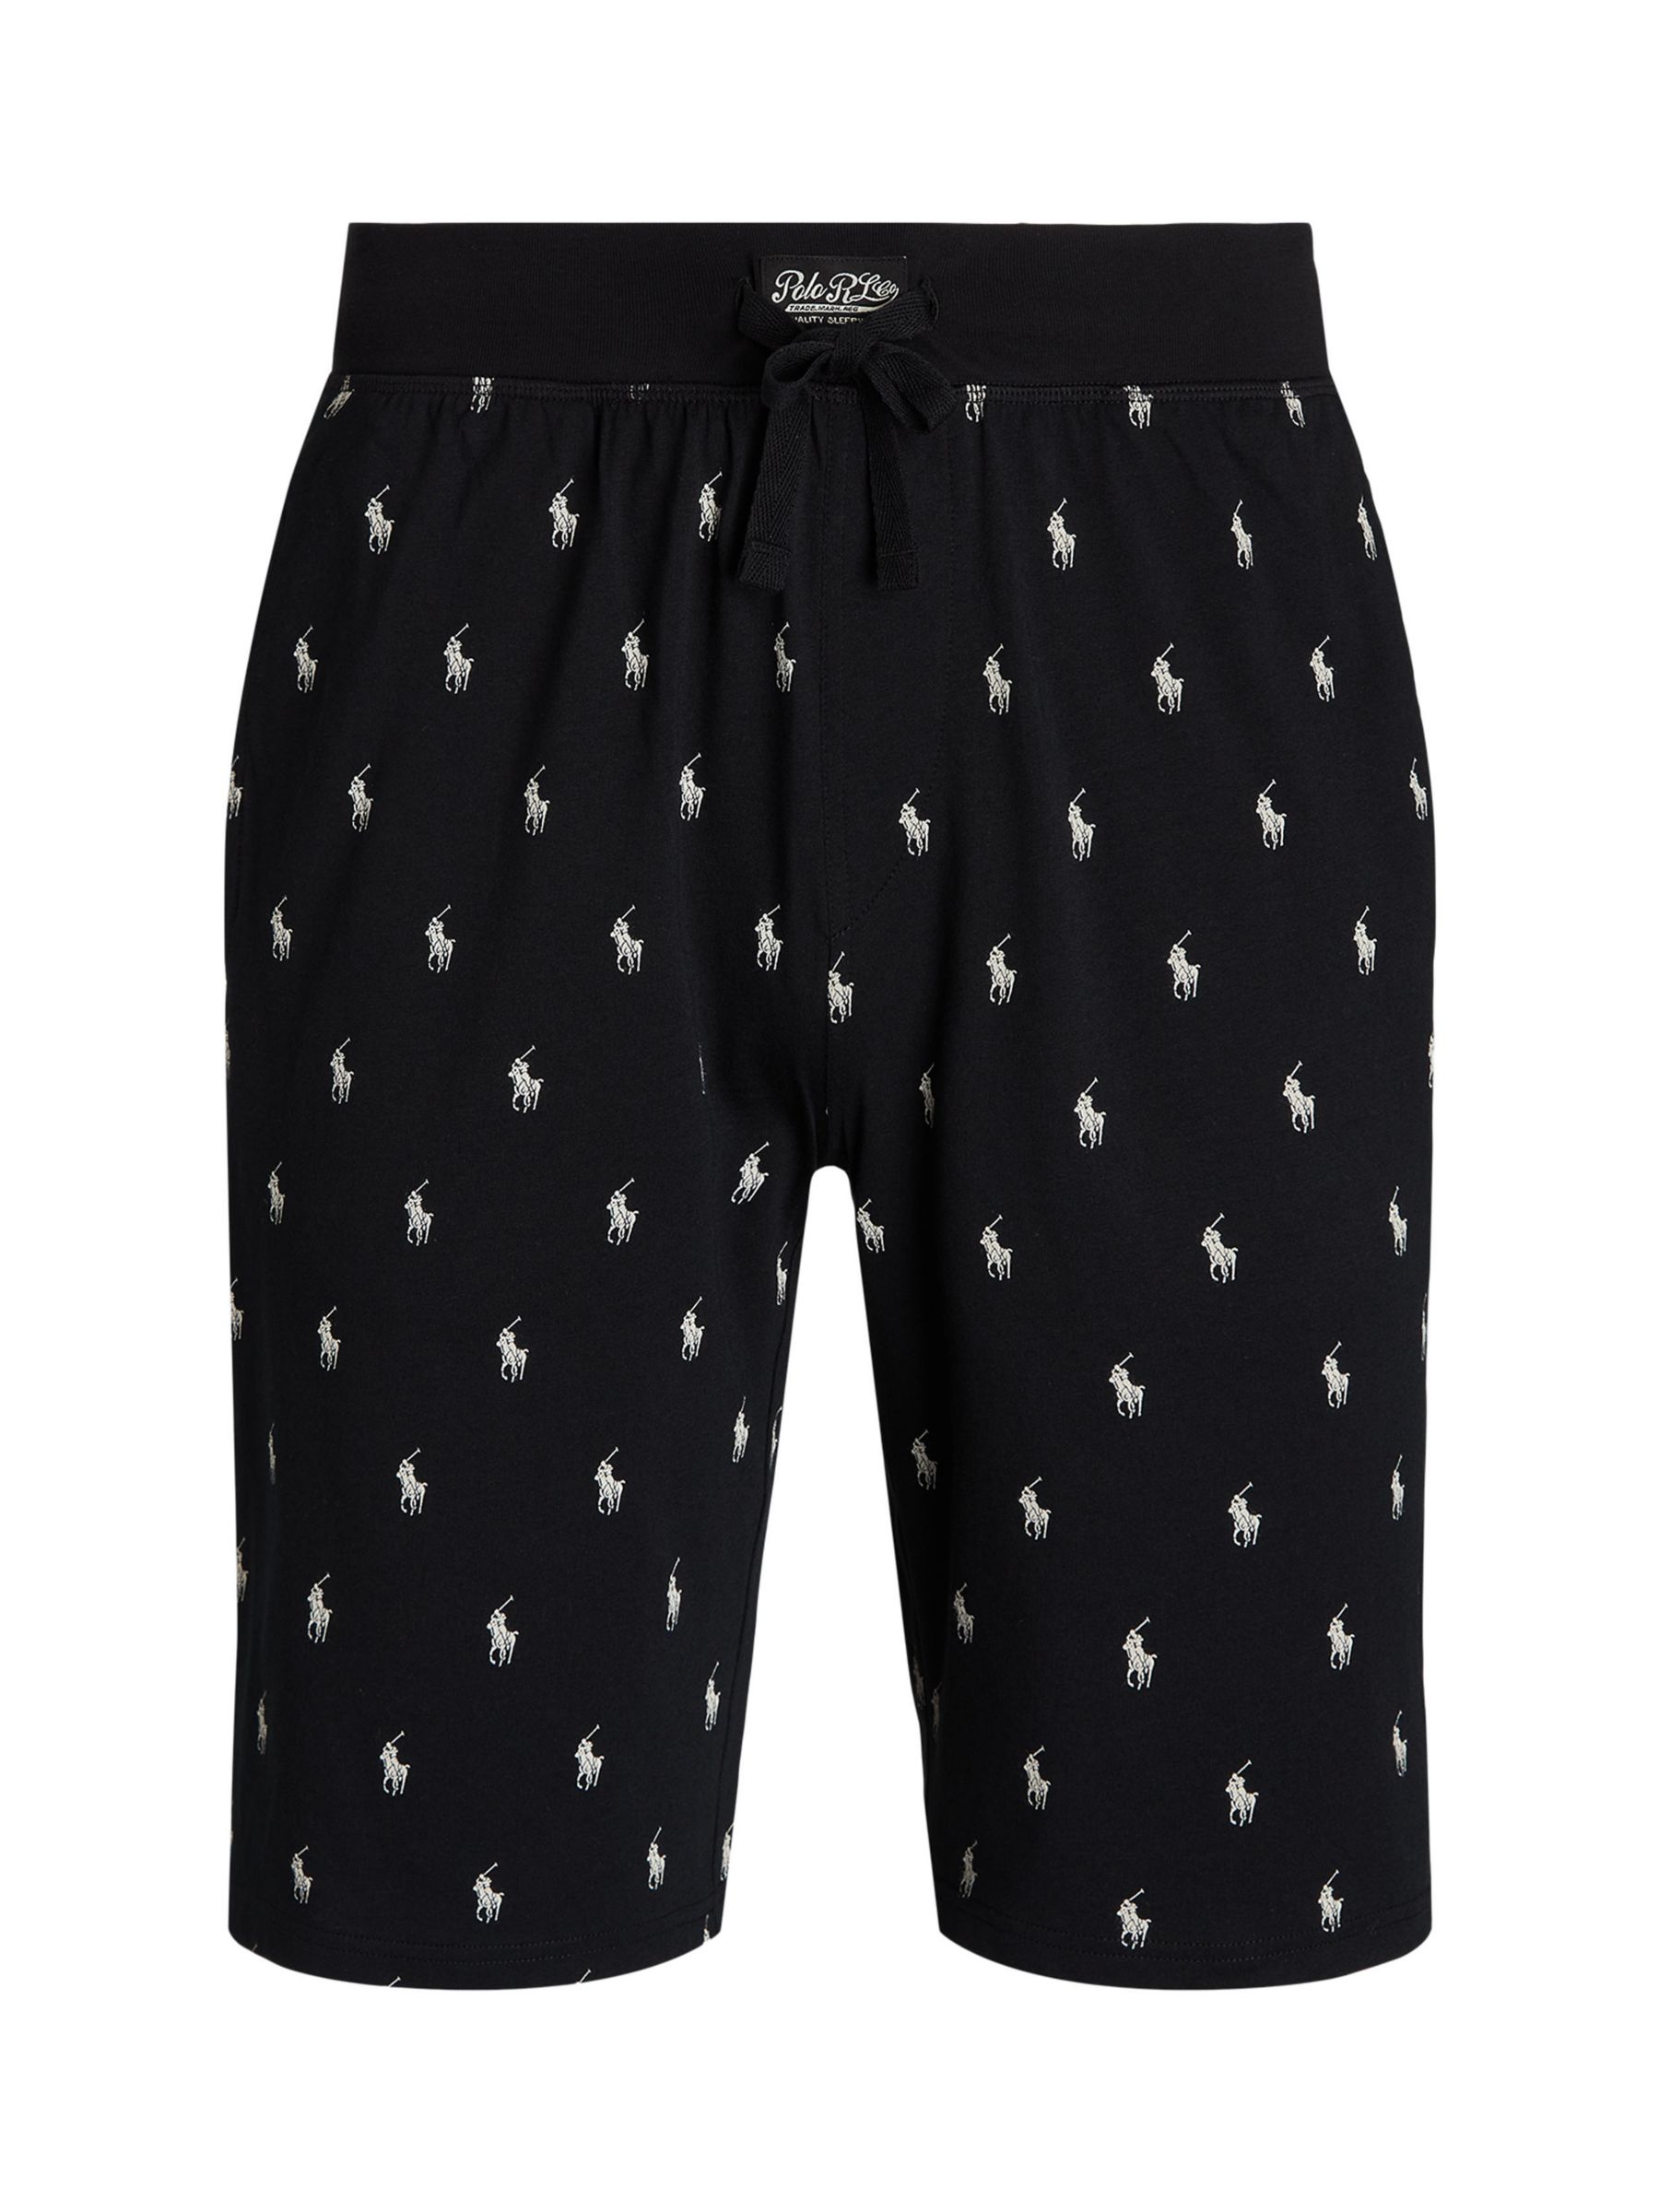 Хлопковые пижамные шорты поло с пони узкого кроя Ralph Lauren